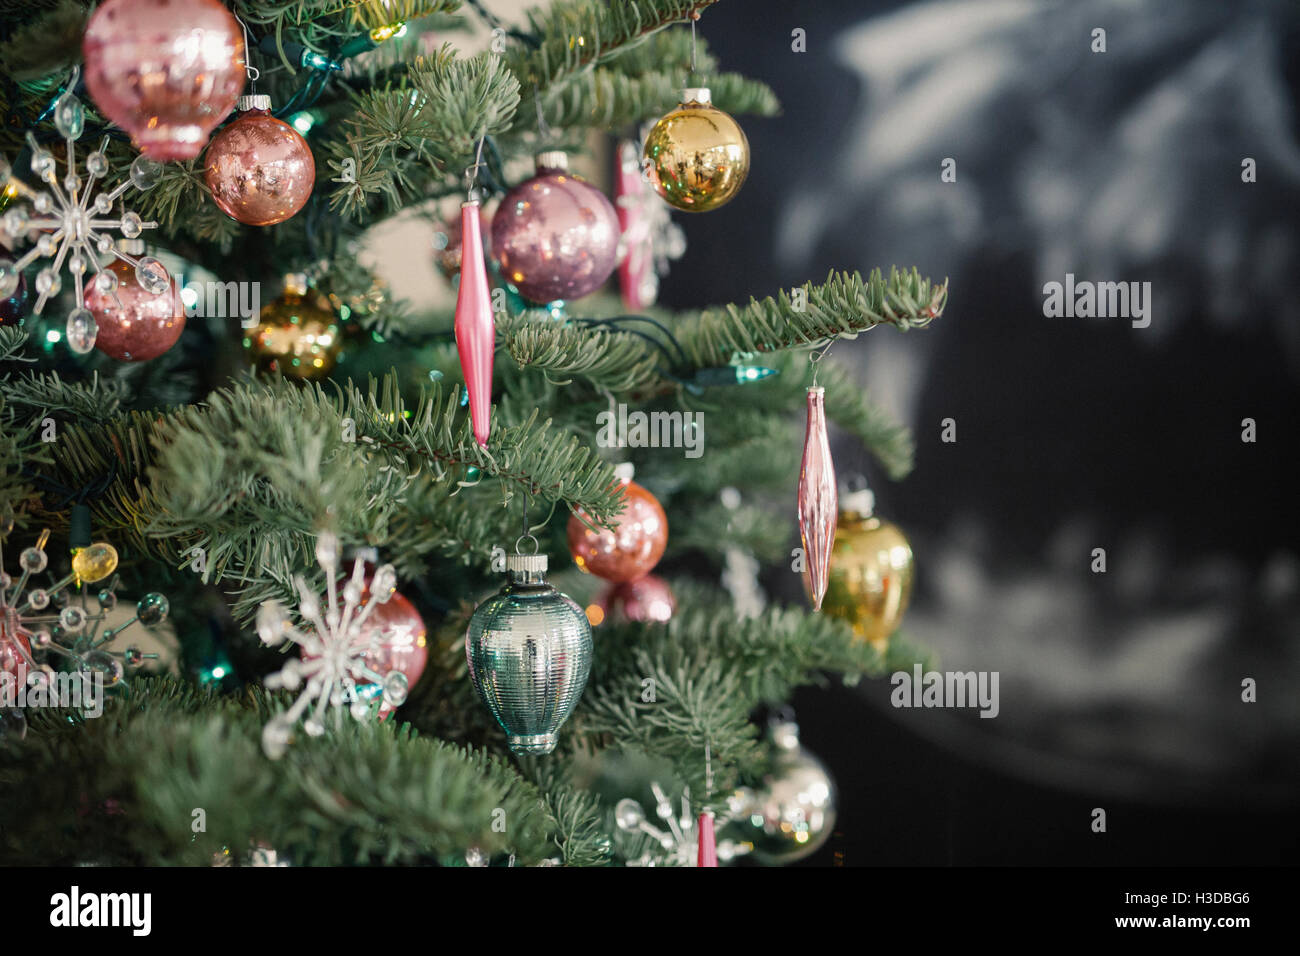 Weihnachtsbaum, einer echten Tanne mit Kugeln und Ornamenten verziert. Stockfoto